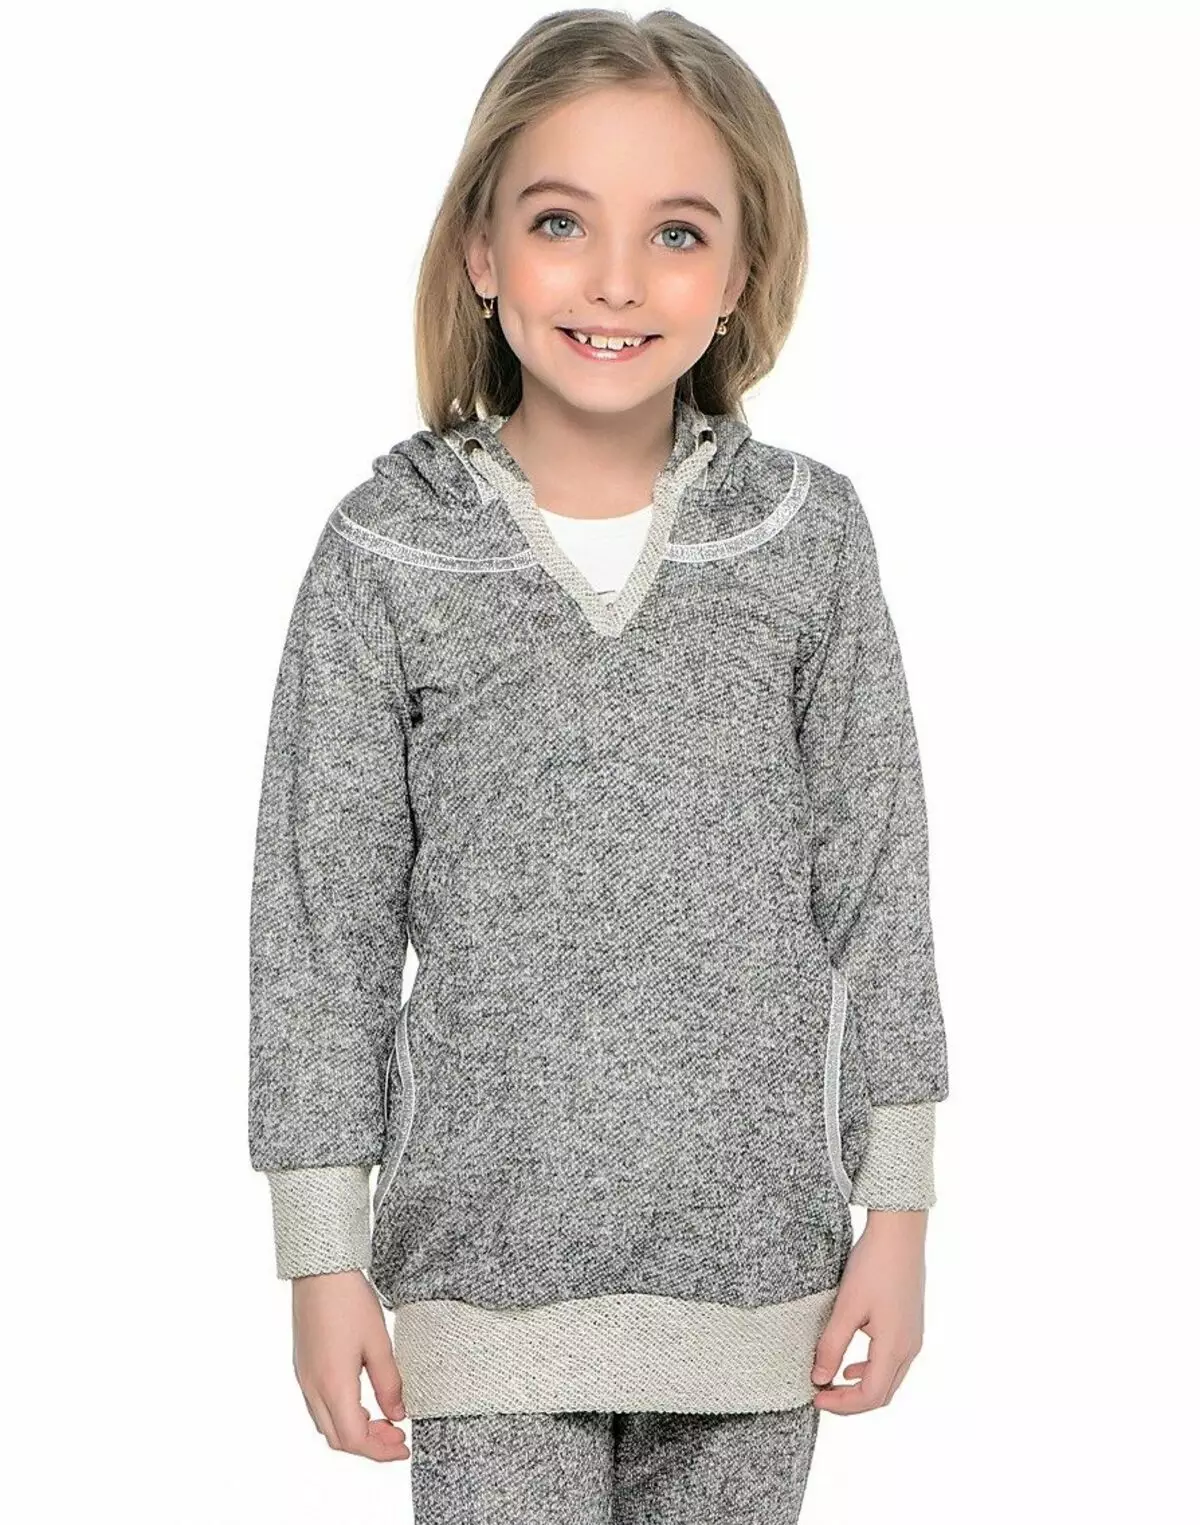 Sweatshirt foar it famke (80 foto's): adolesinte modellen foar famkes 10-12 en 13-14 jier âld, sweatshirt Faberlik, nekst, op bont, bliksem 1326_67